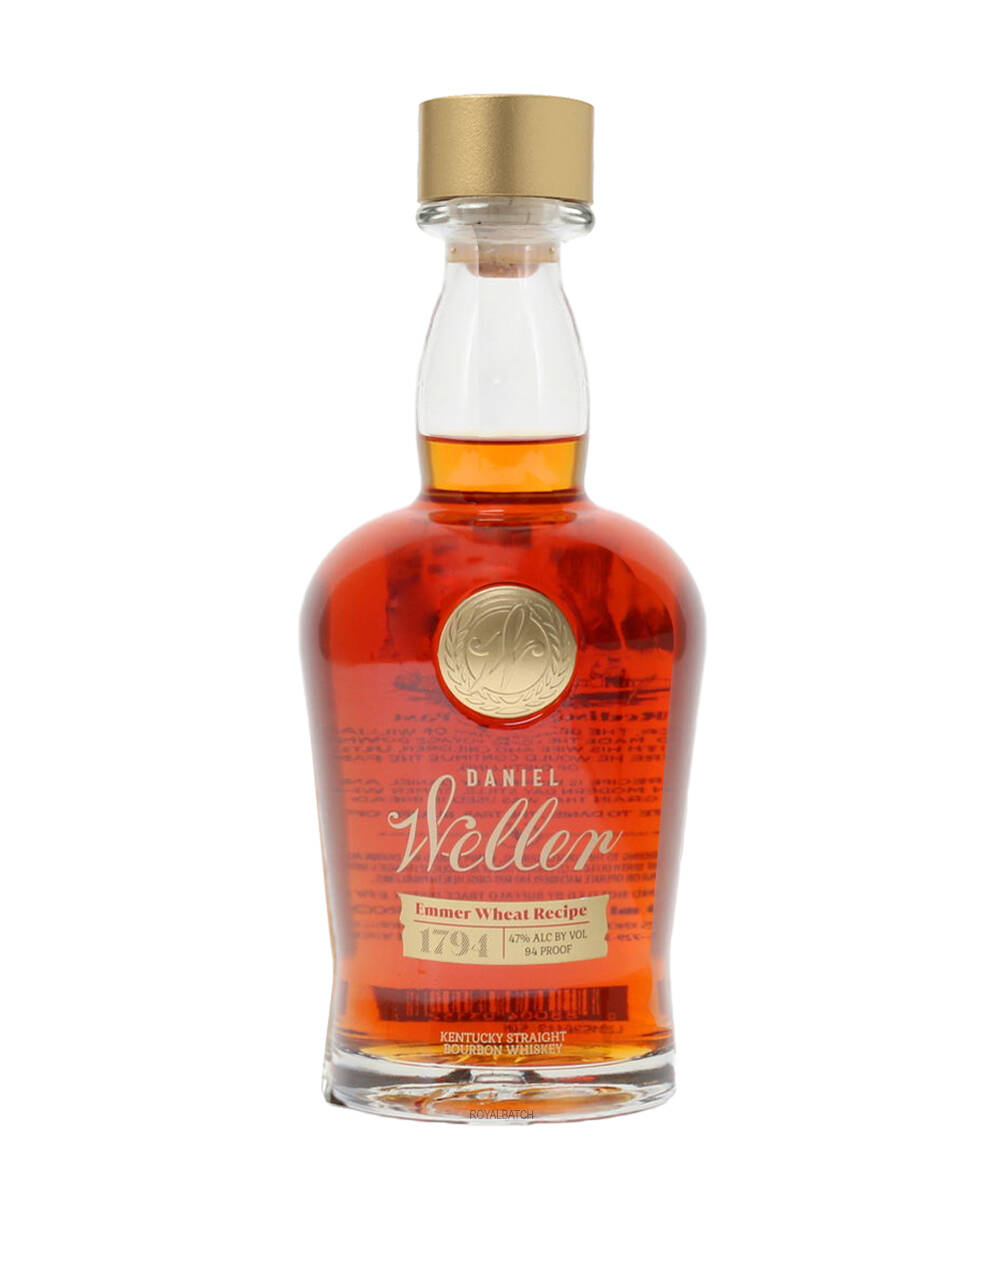 Daniel Weller Emmer Wheat Recipe 1794 Bourbon Whiskey